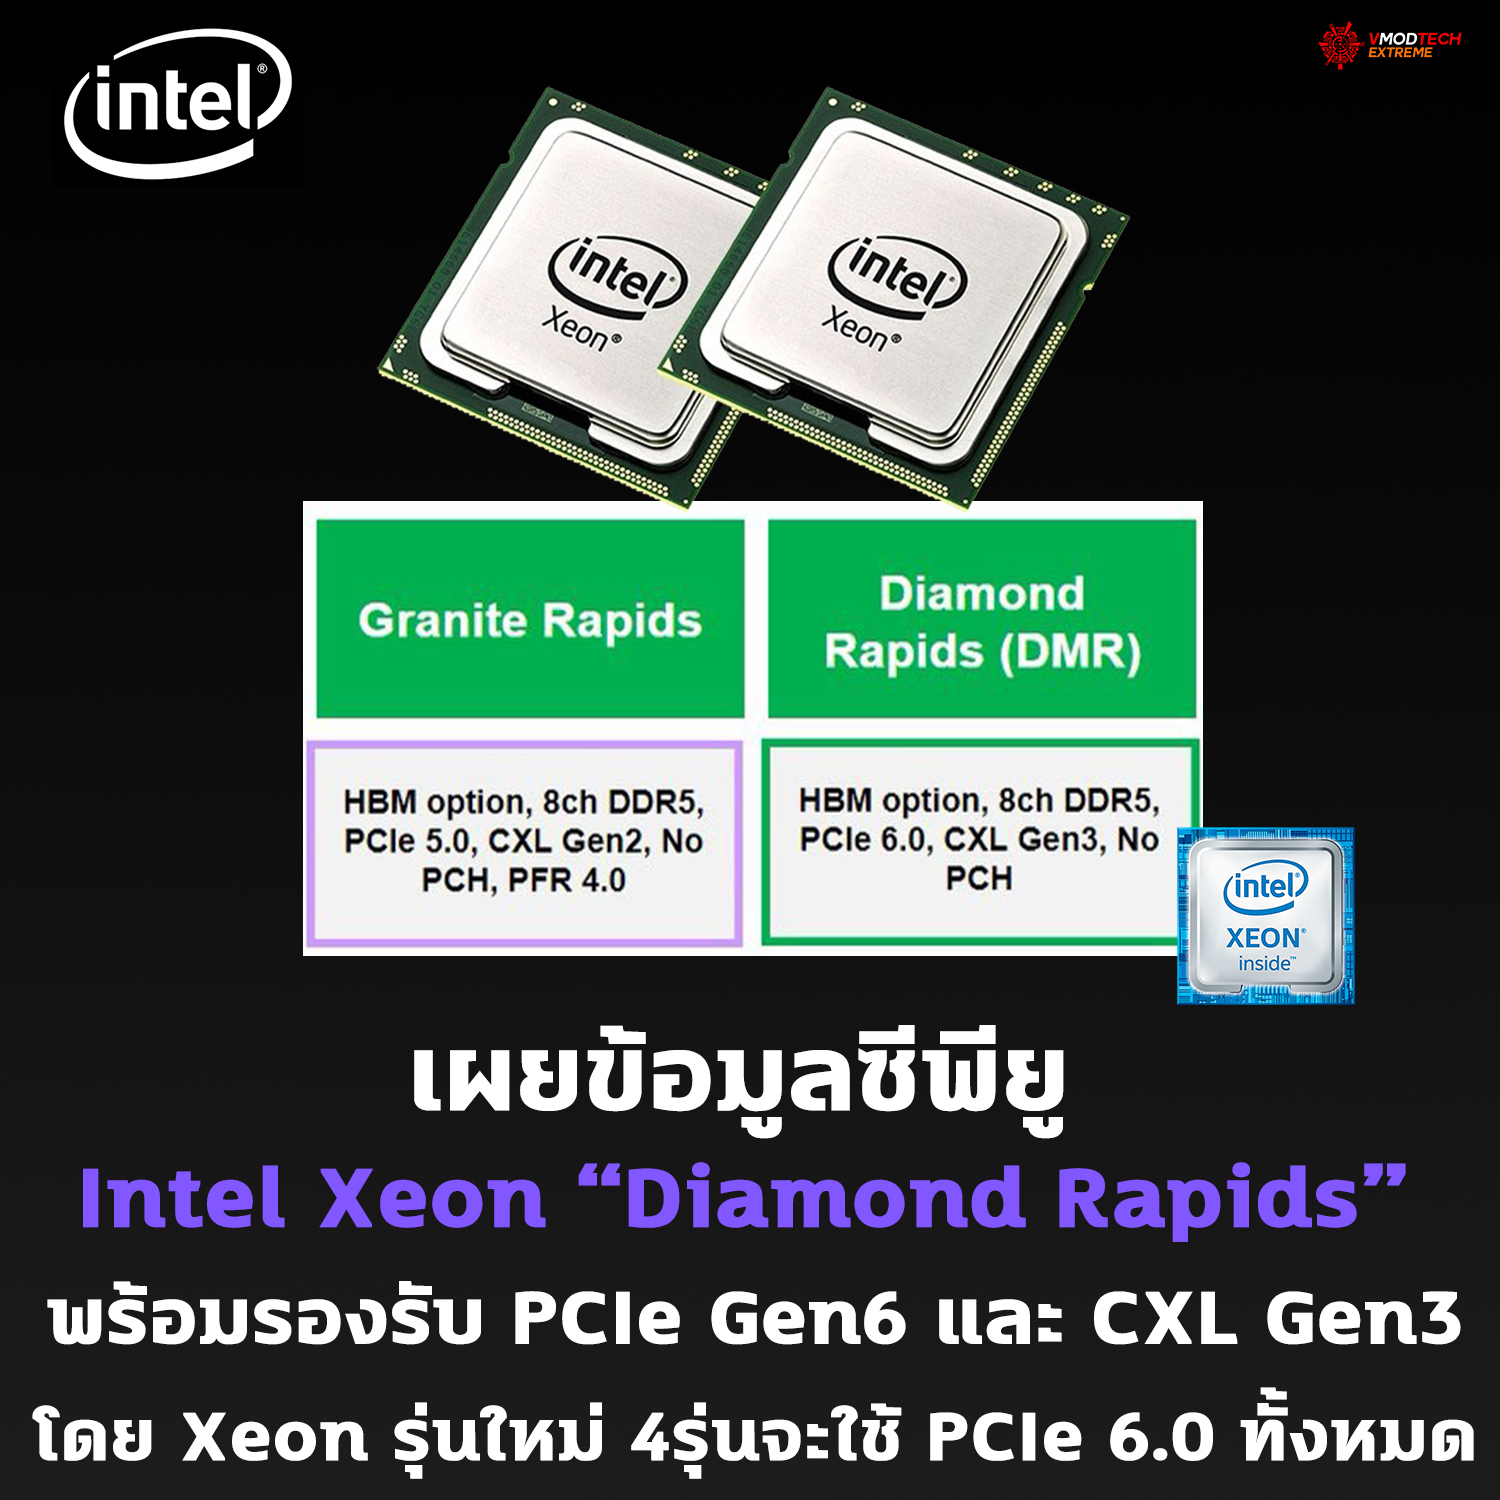 intel xeon diamond rapids เผยข้อมูลซีพียู Intel Xeon Diamond Rapids พร้อมรองรับ PCIe Gen6 และ CXL Gen3